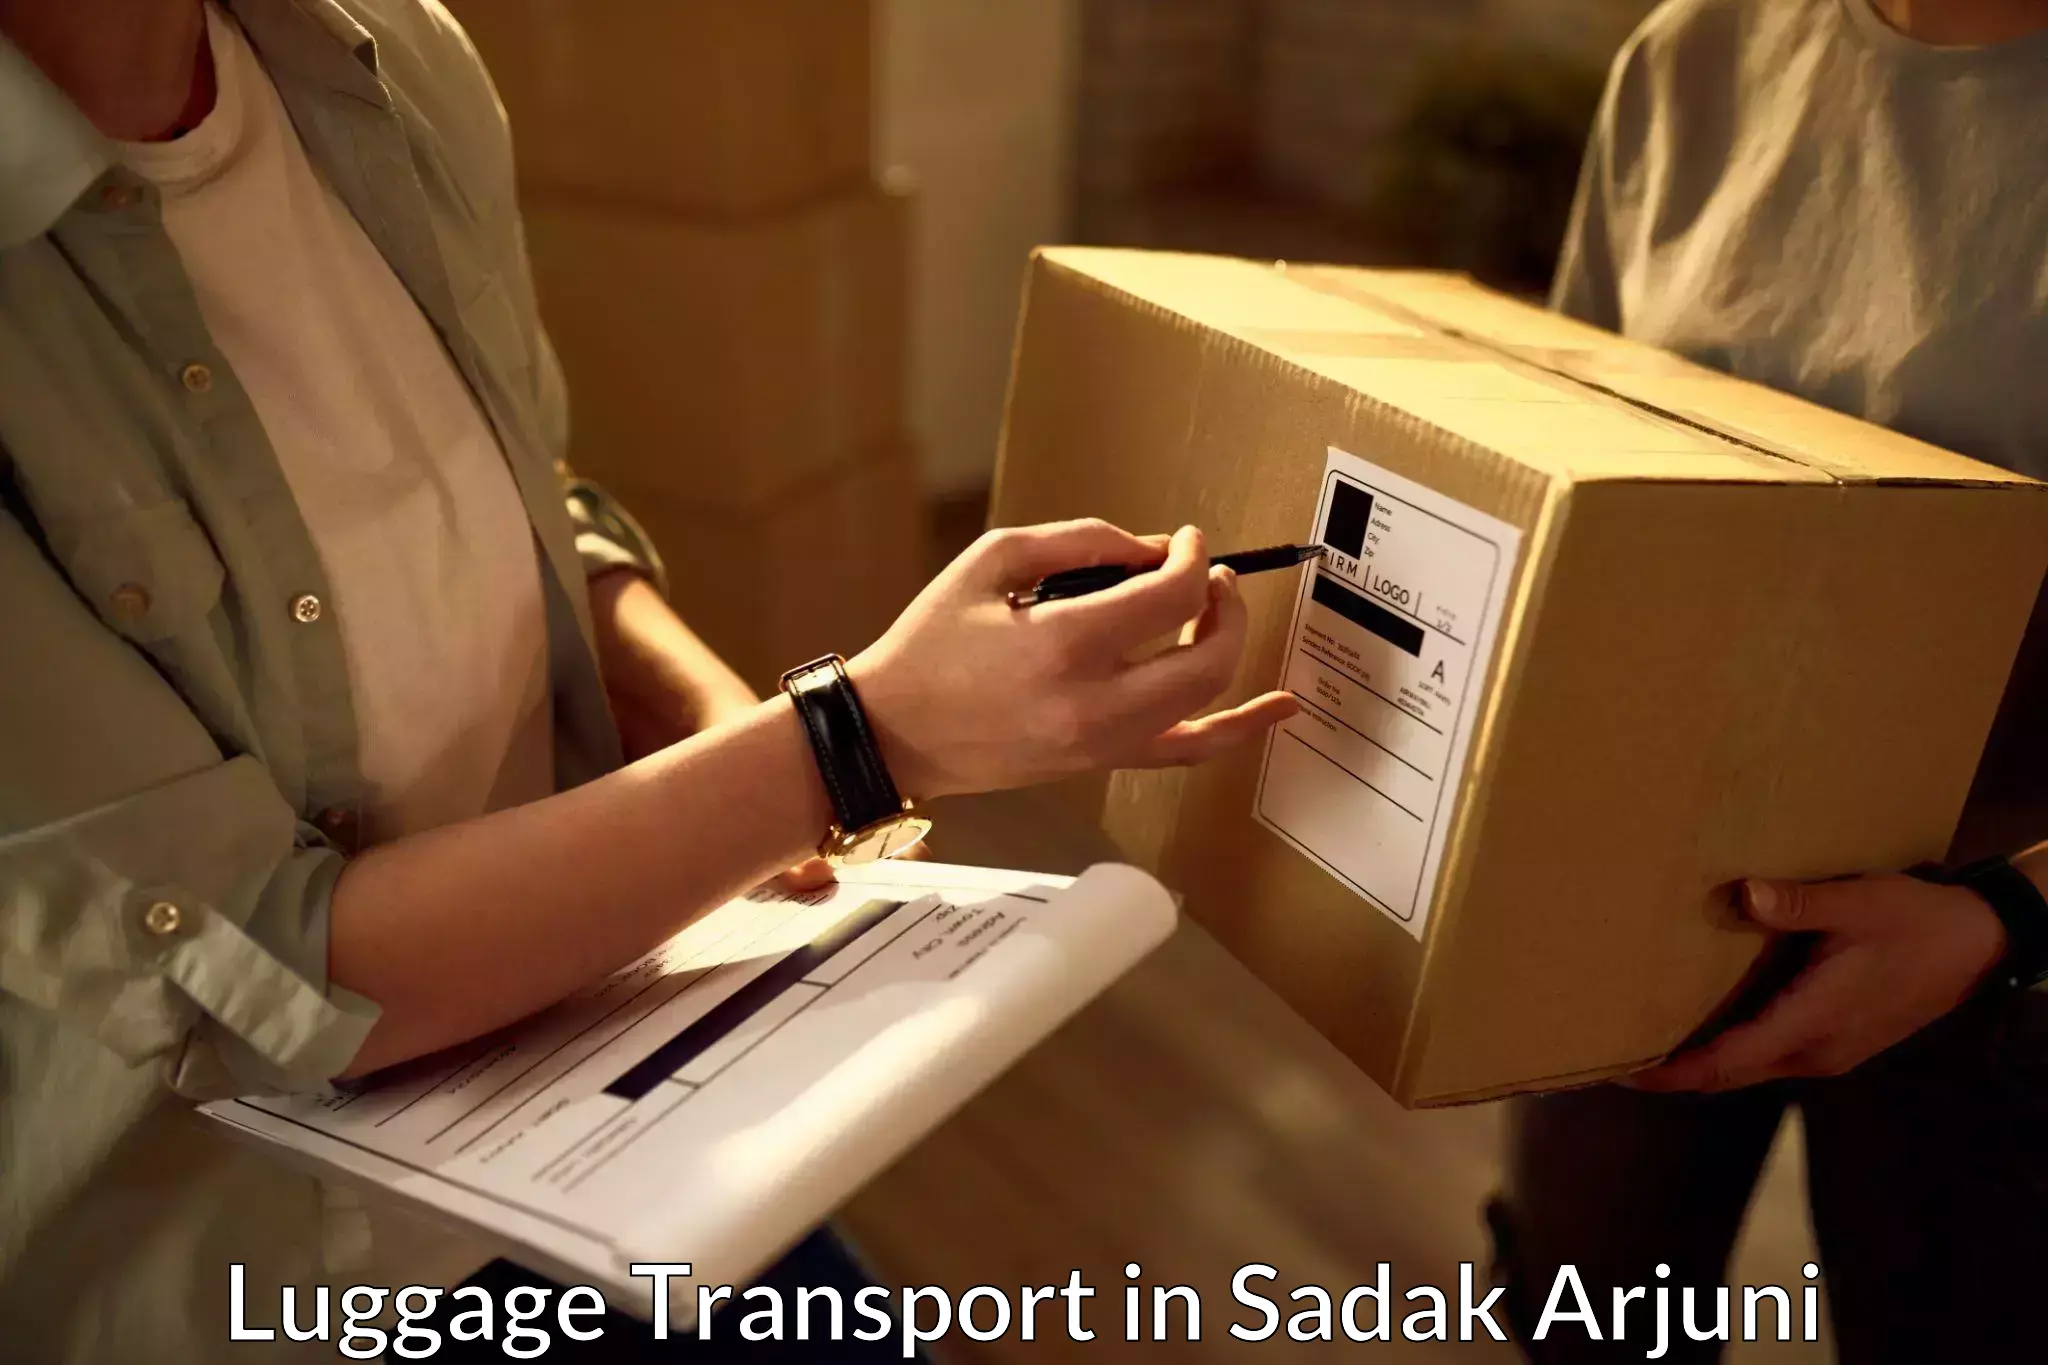 Luggage shipping solutions in Sadak Arjuni